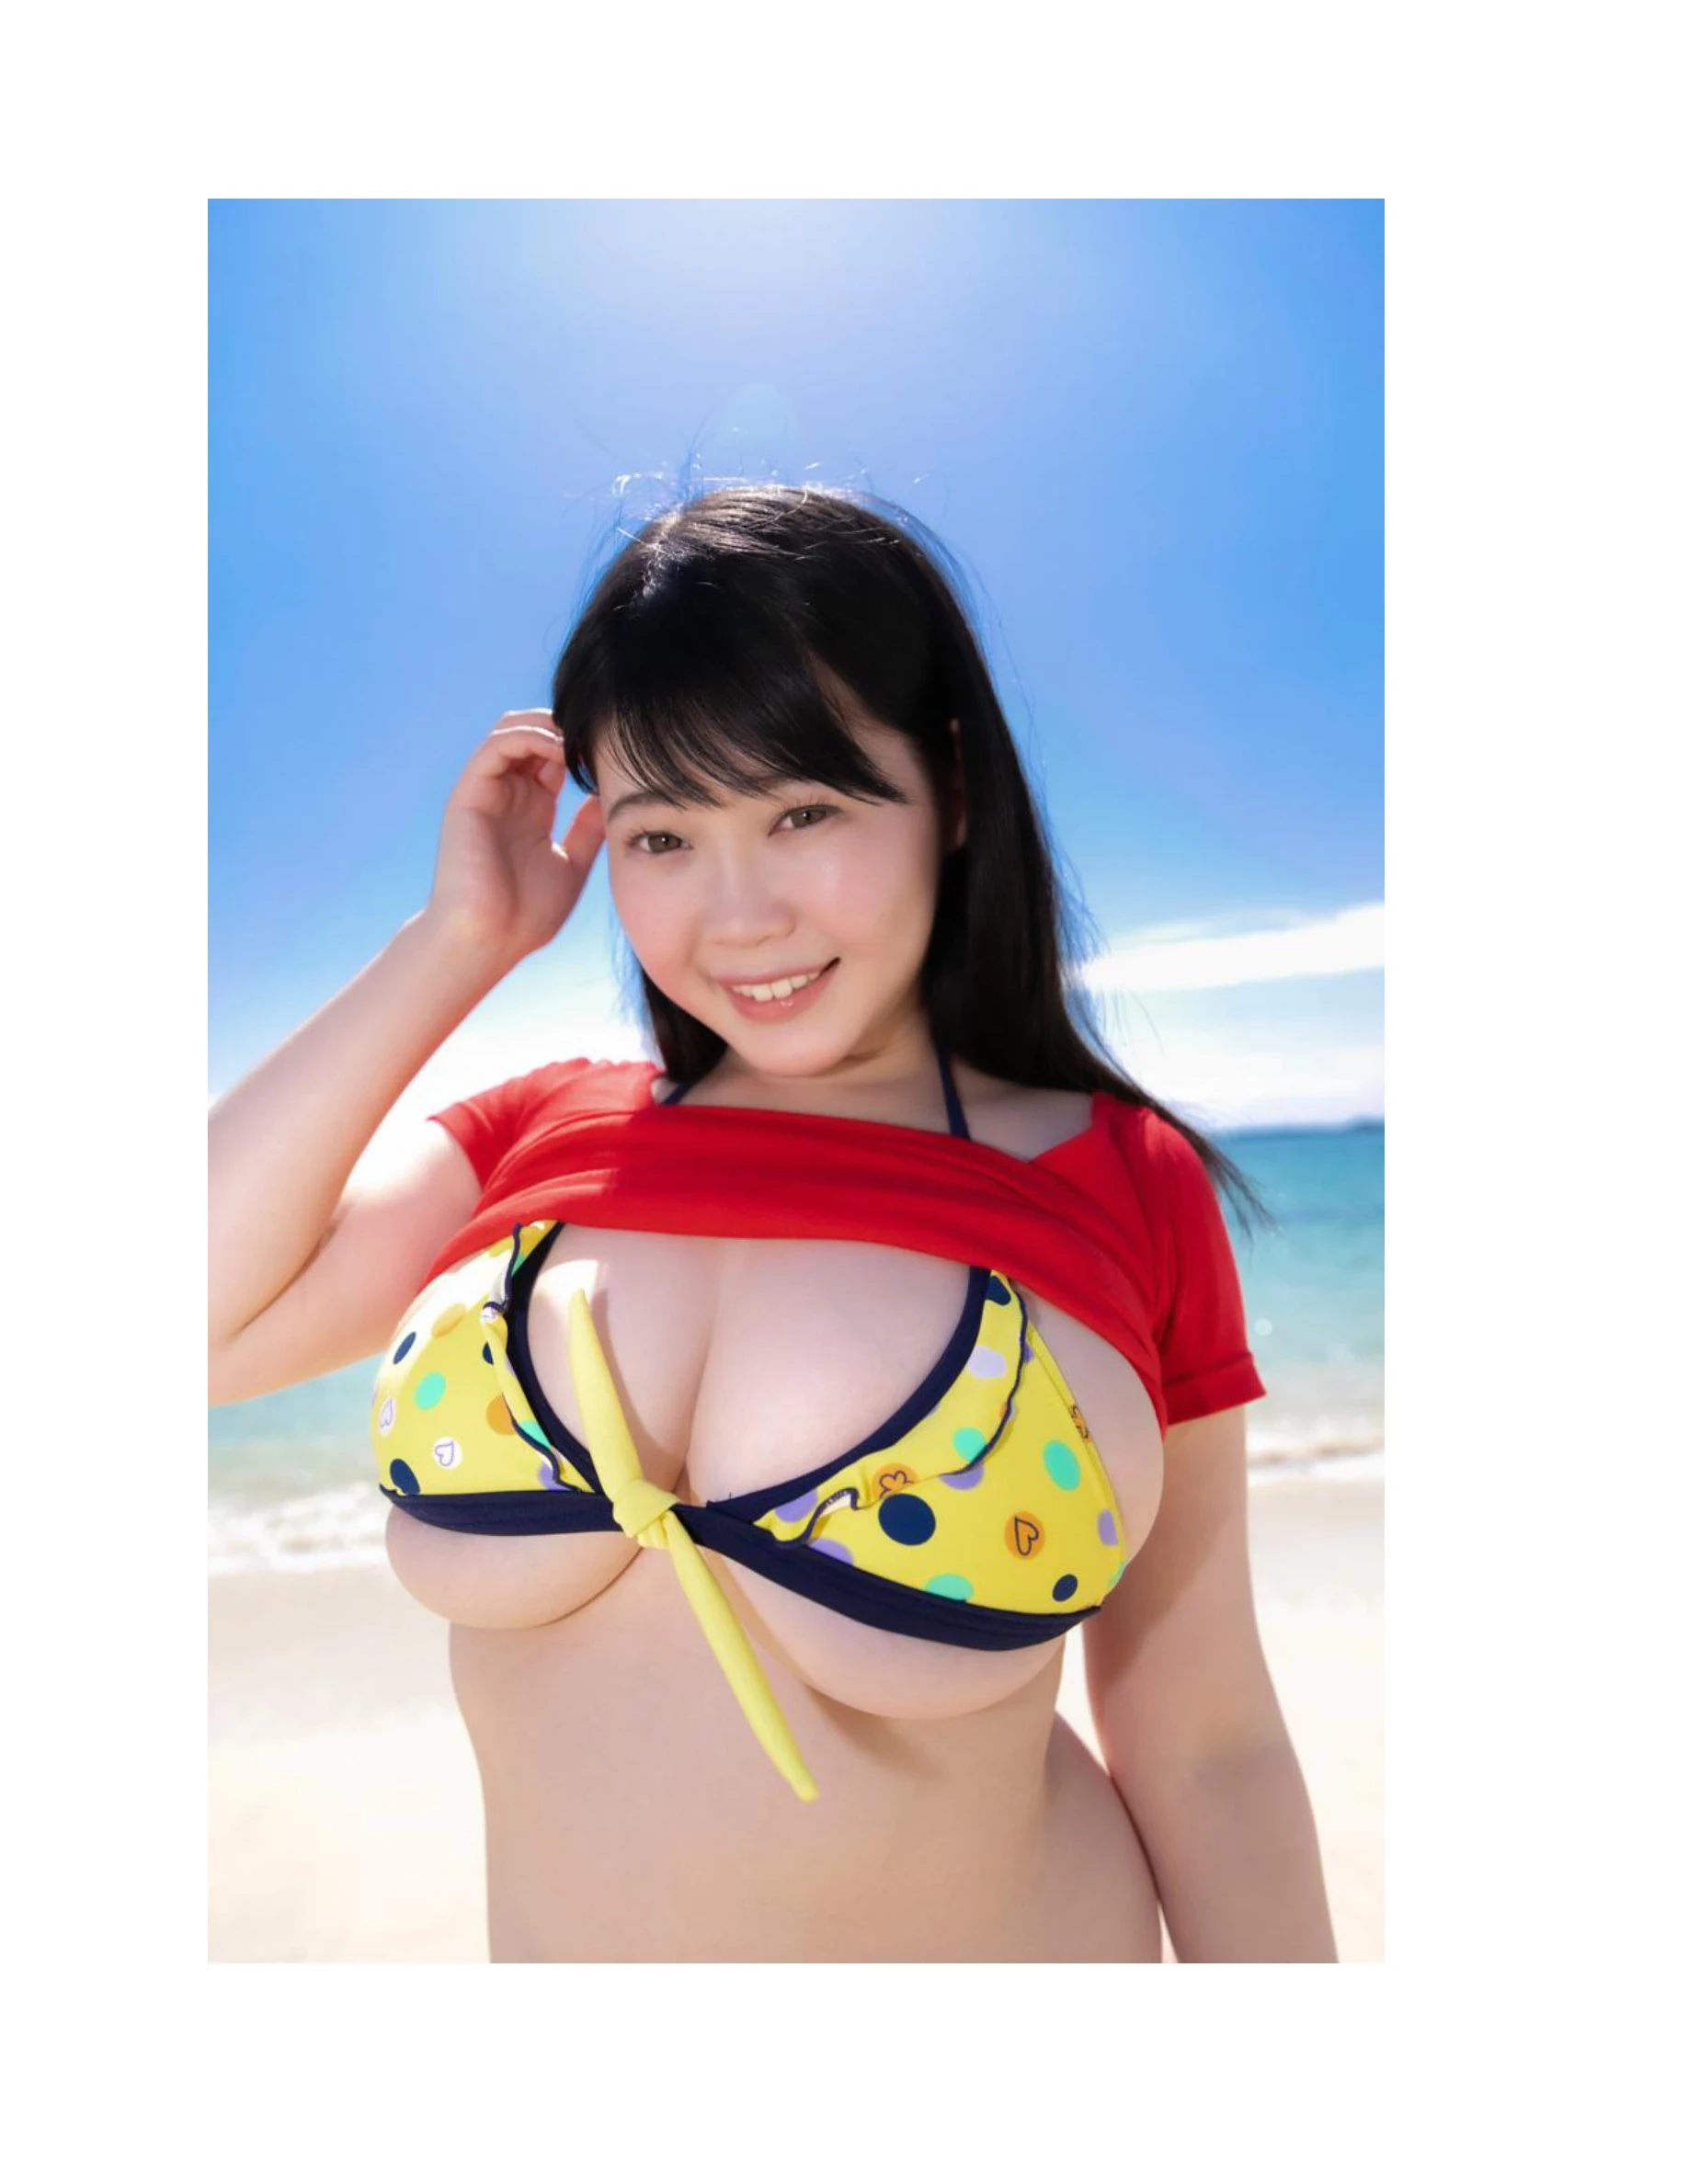 伊川愛梨 卒業旅行 夏 寫真集 J罩杯偶像美少女傳説-319